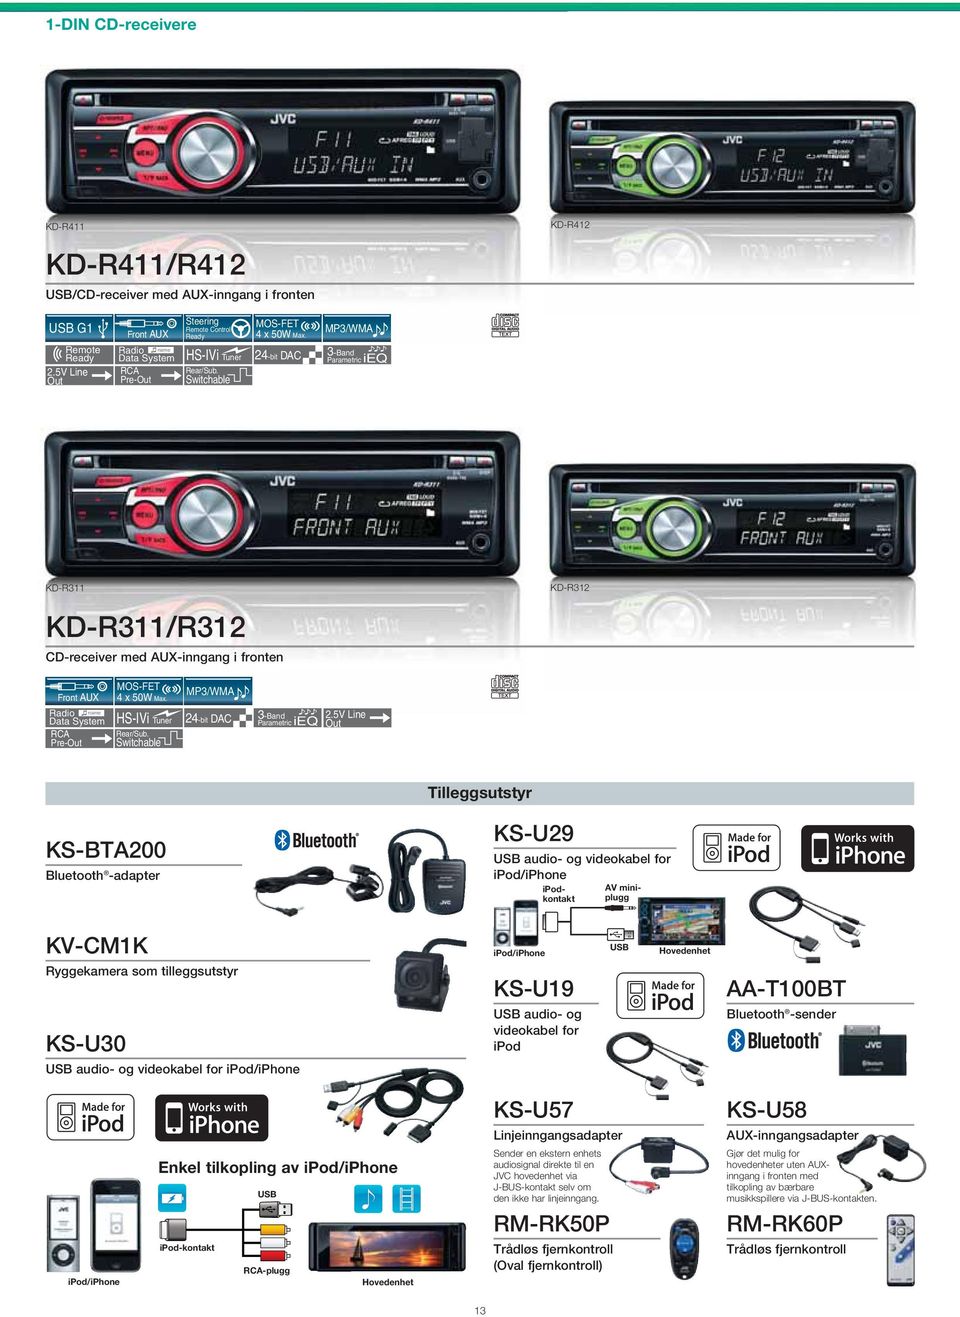 Switchable MP3/WMA 3-Band Parametric ieq Tilleggsutstyr KS-BTA200 -adapter KS-U29 audio- og videokabel for ipod/iphone AV miniplugg ipodkontakt KV-CM1K Ryggekamera som tilleggsutstyr KS-U30 audio- og